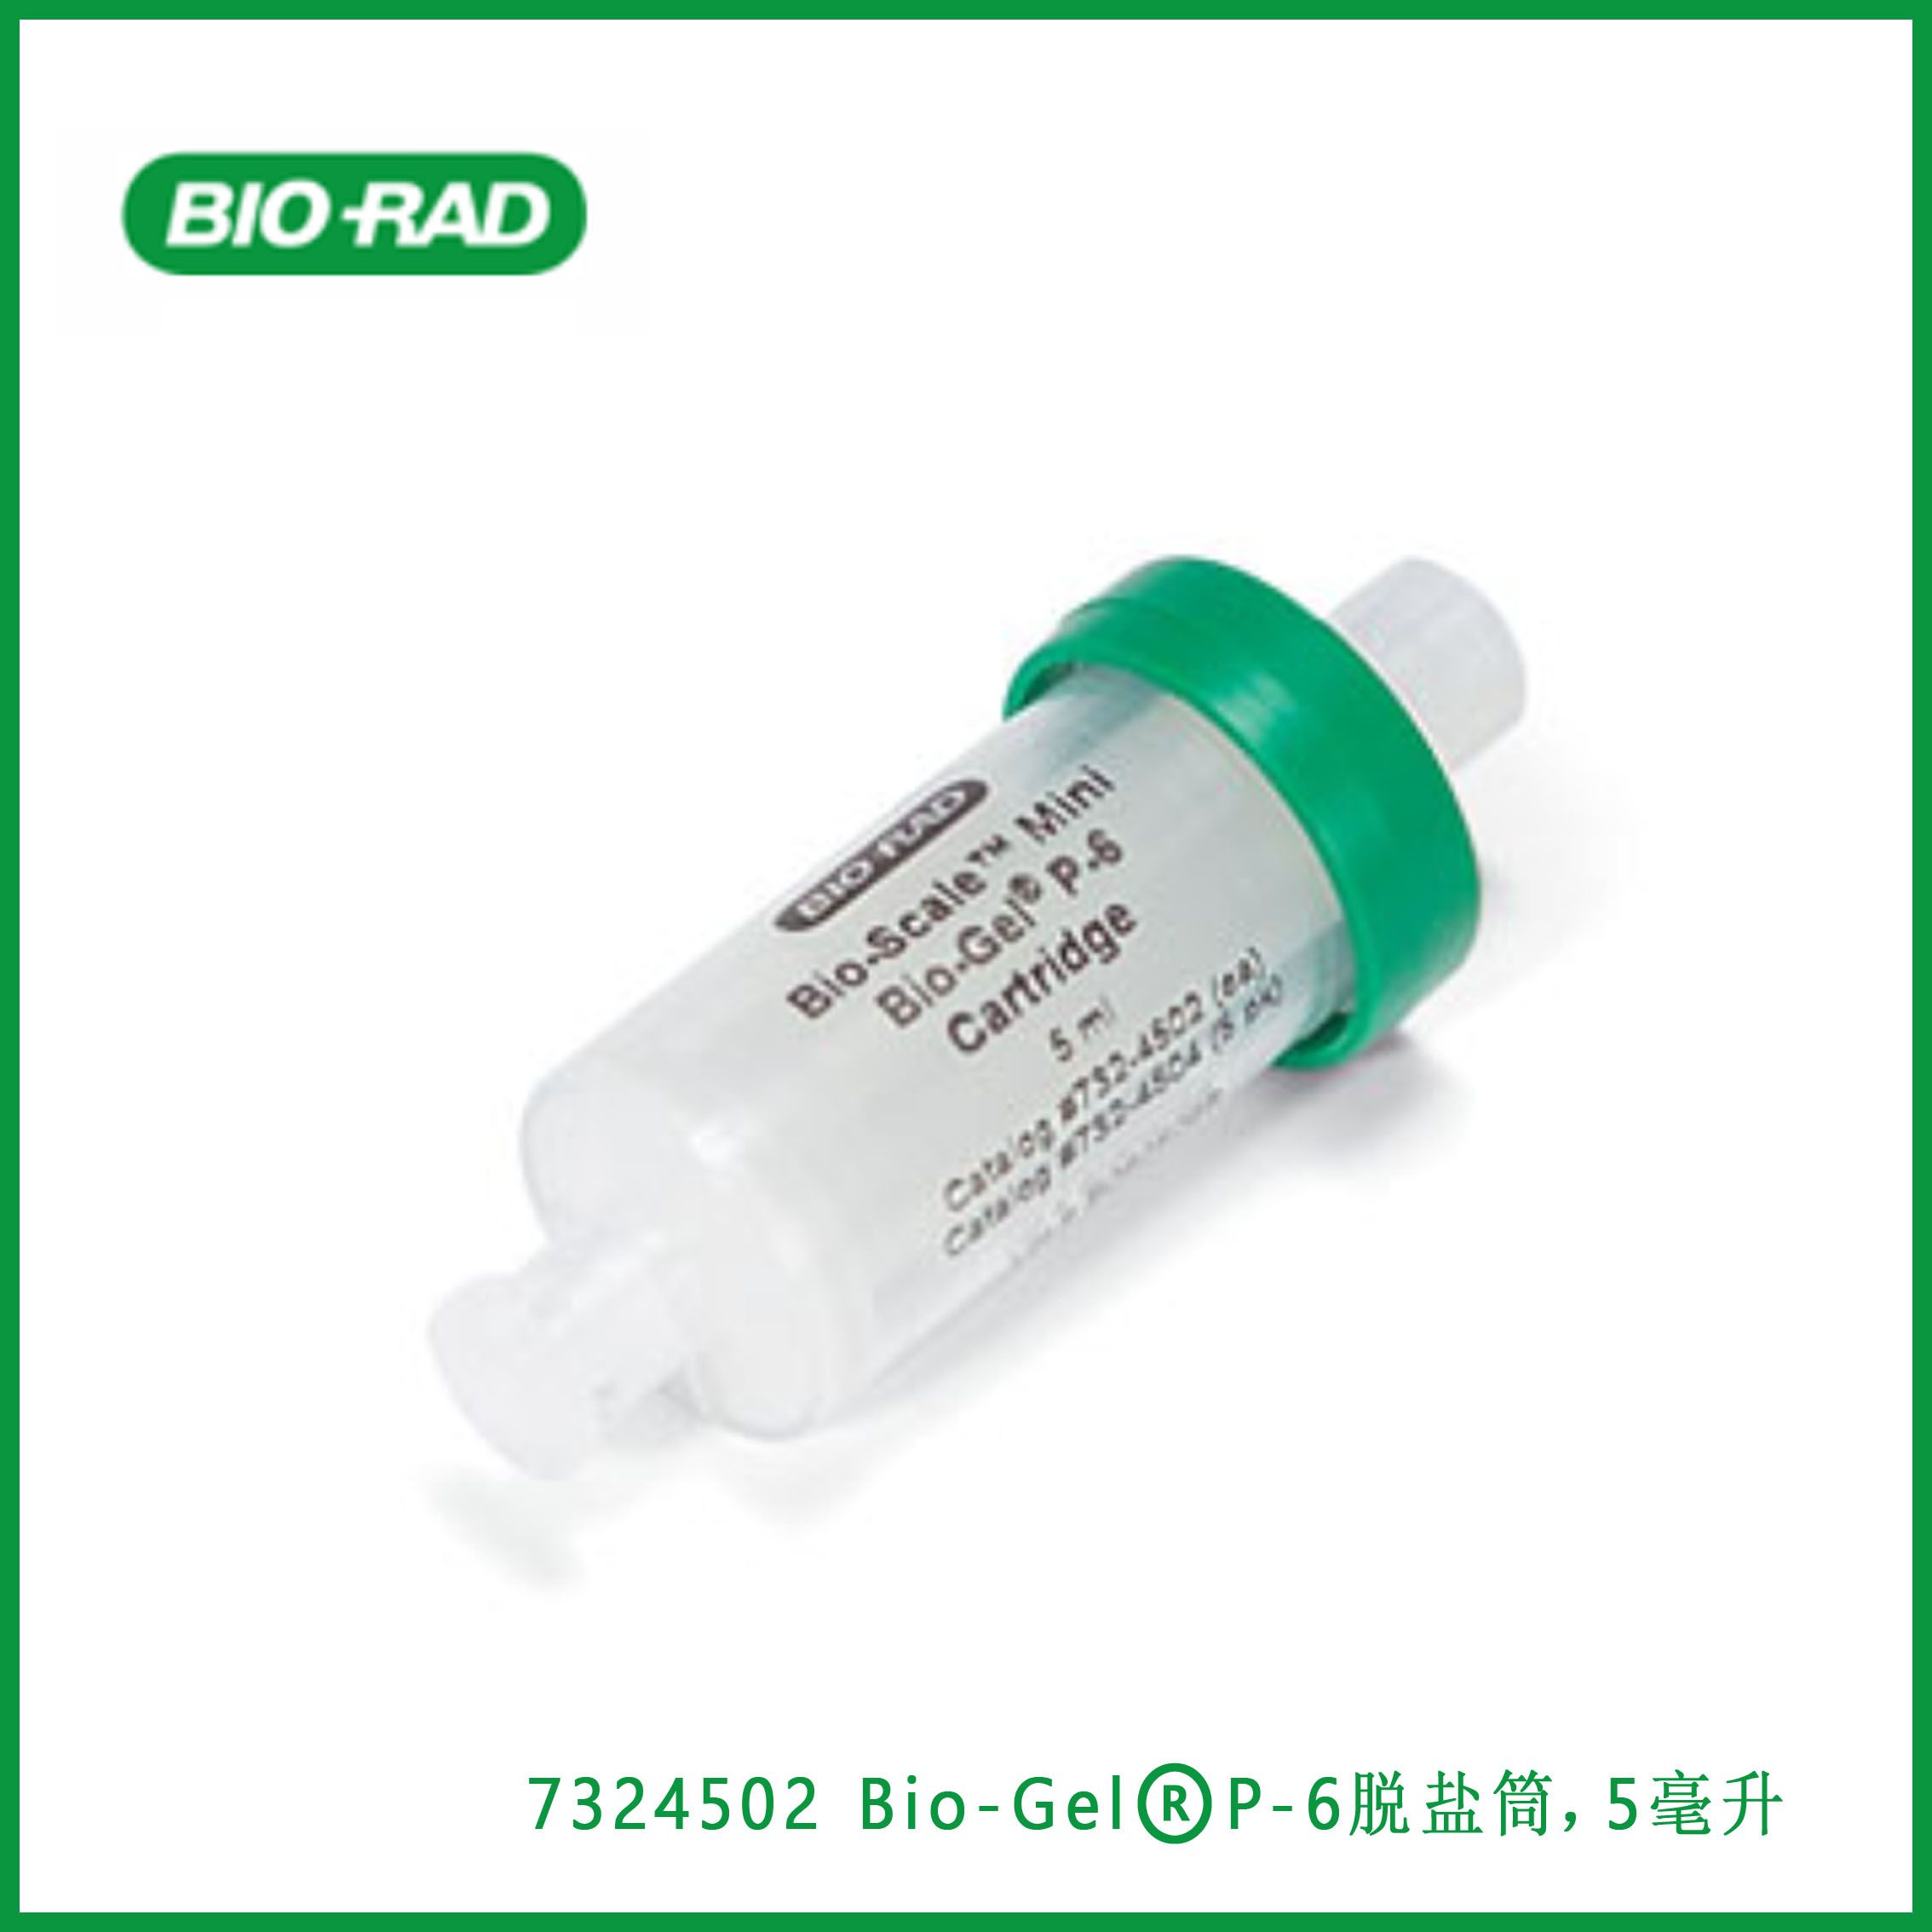 伯乐Bio-Rad7324502 Bio-Scale™ Mini Bio-Gel® P-6 Desalting Cartridge, 5 ml ，Bio-Scale™  Mini Bio-Gel®P-6脱盐筒，5毫升，现货